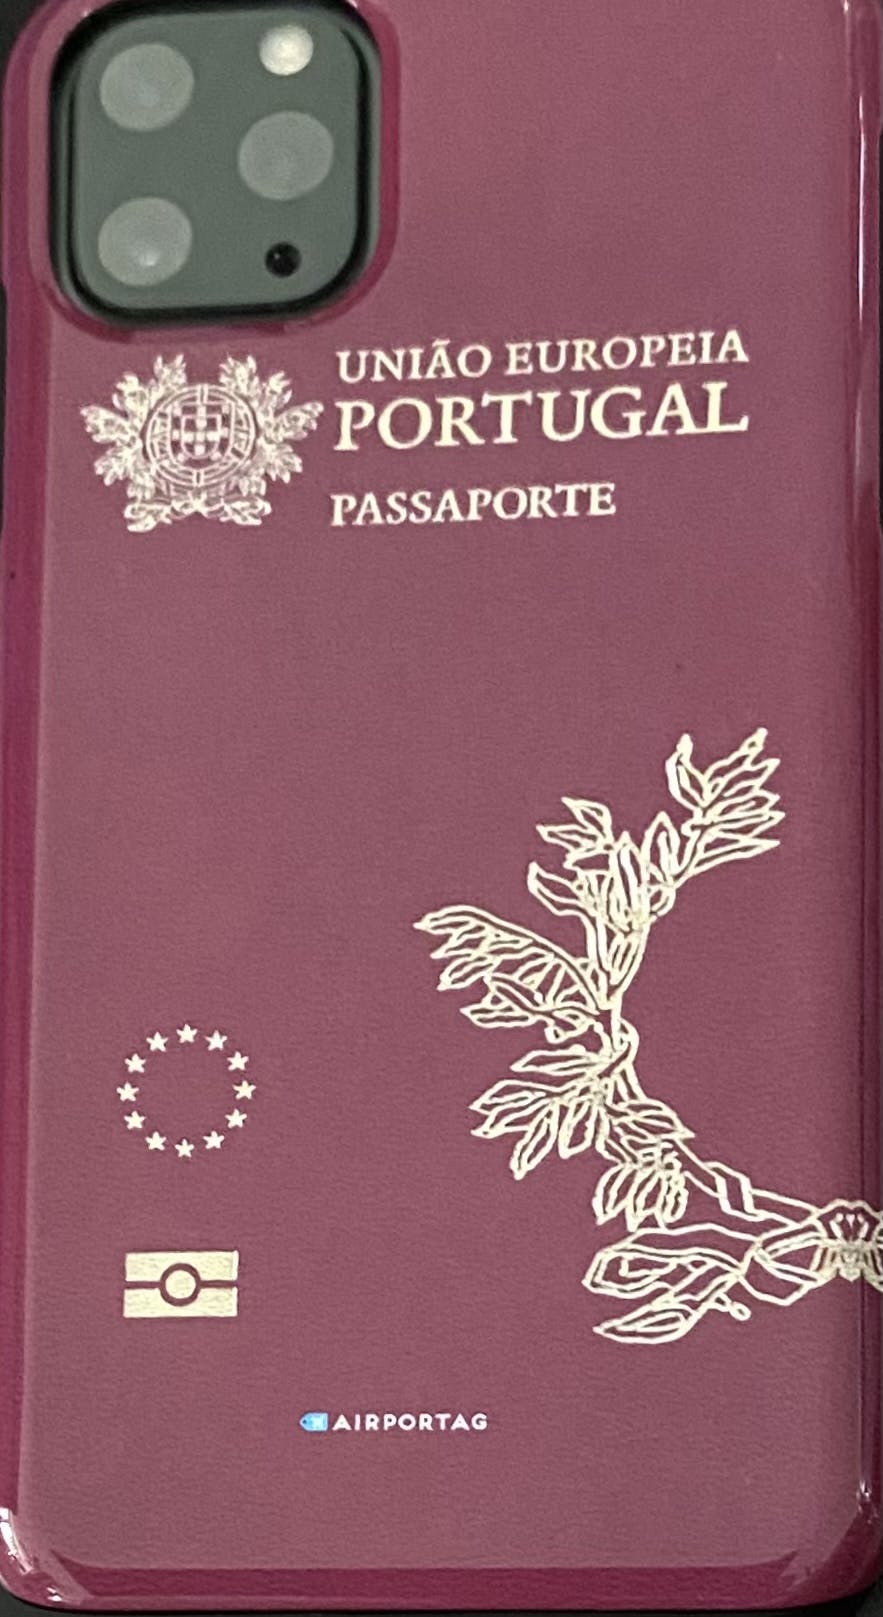 passport application near me open house